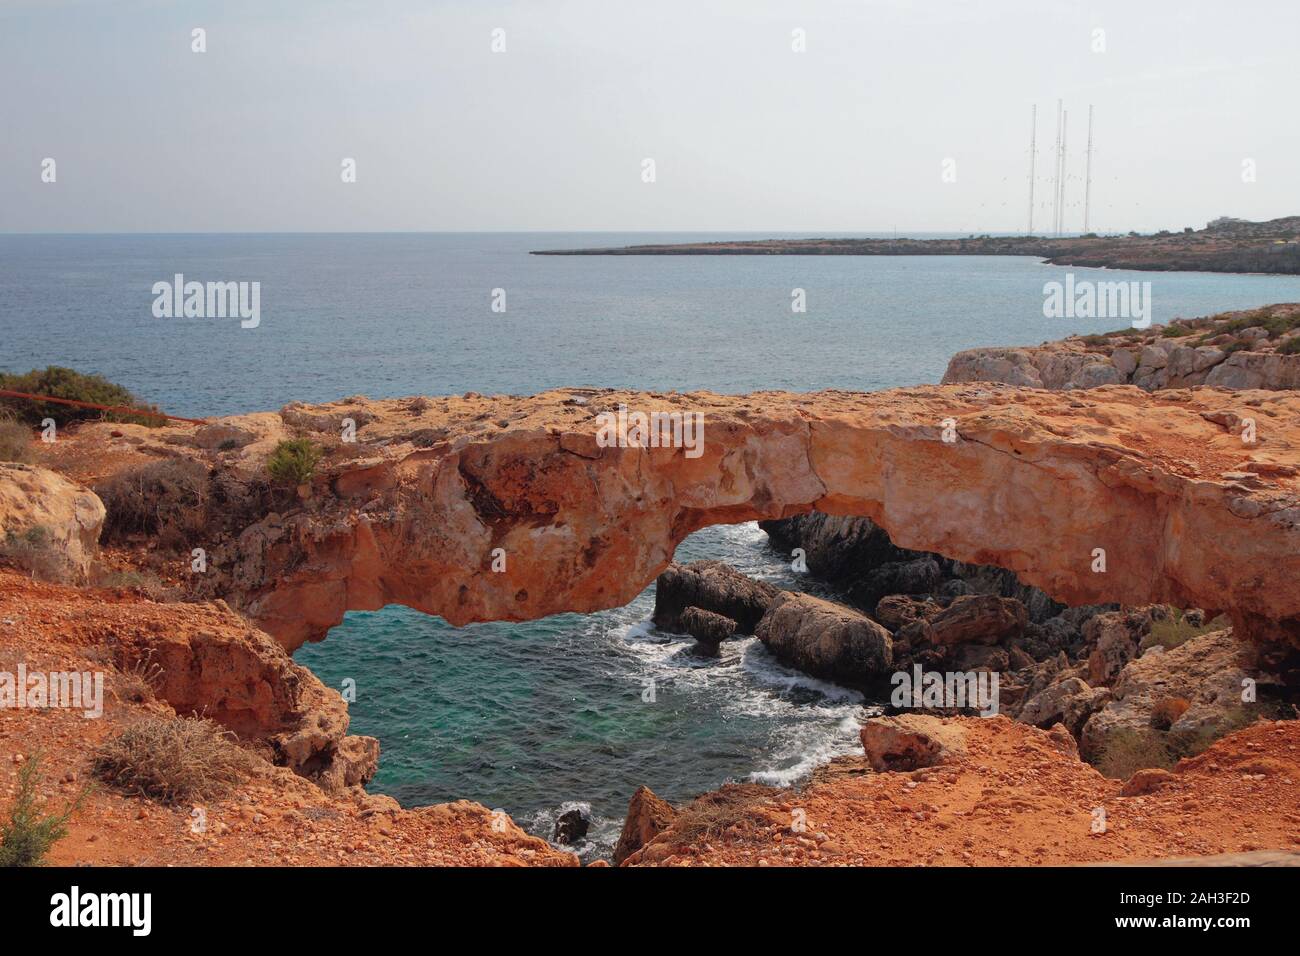 Arco de piedra en la costa del mar. Cape Greco, Aya Napa, Chipre Foto de stock